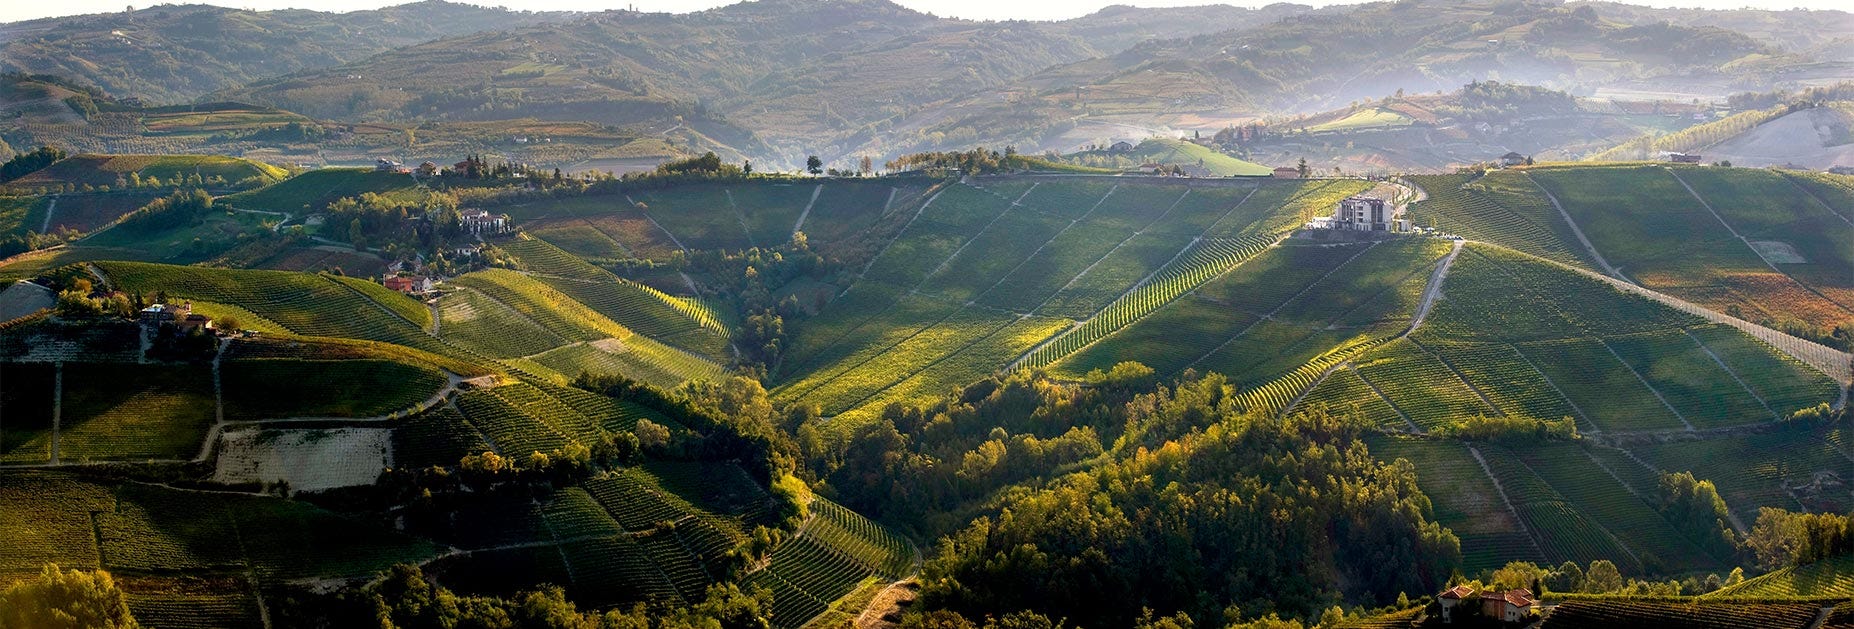 Imposante Hügellandschaft, worauf die Reben des Produzenten Beni di Batasiolo wunderbar gedeihen